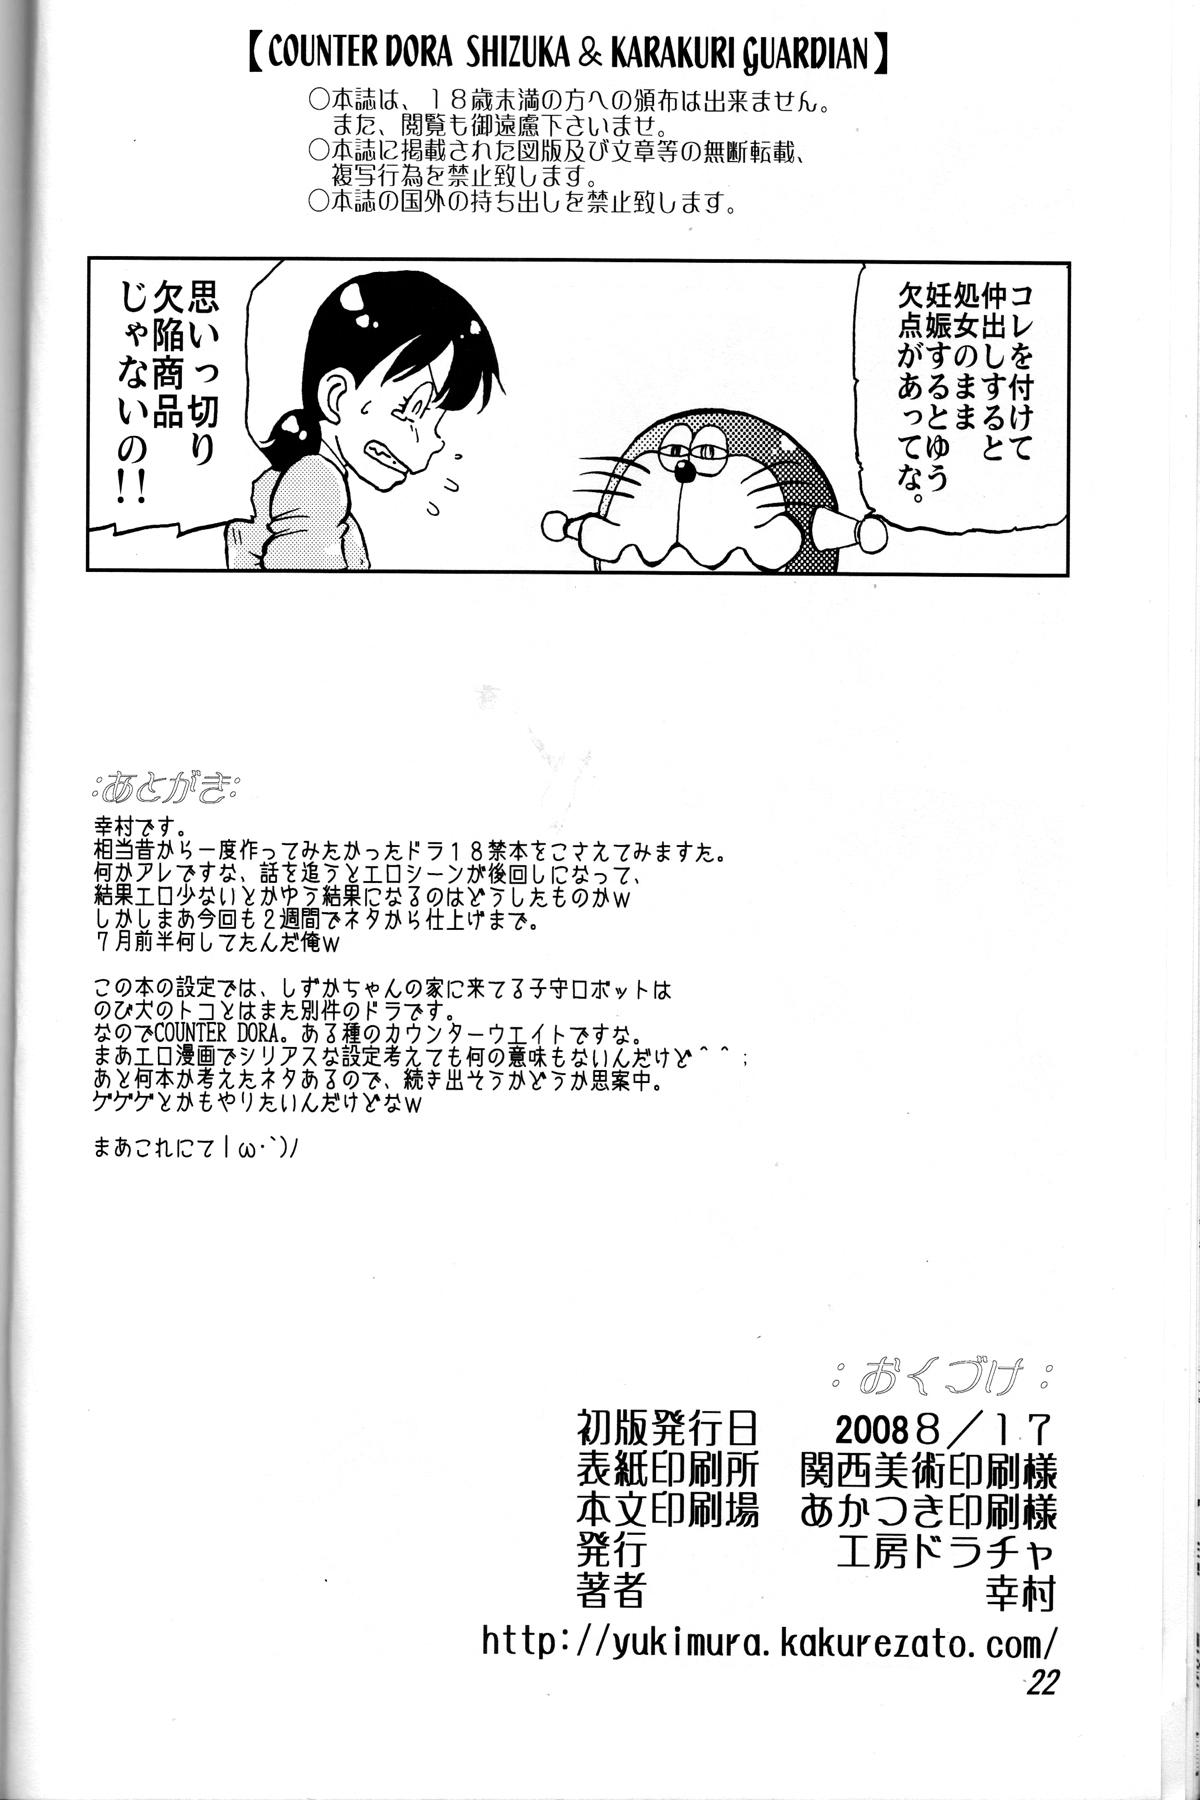 Clitoris Shizuka & Kurikuri Guardian - Doraemon Kiteretsu daihyakka Street Fuck - Page 22